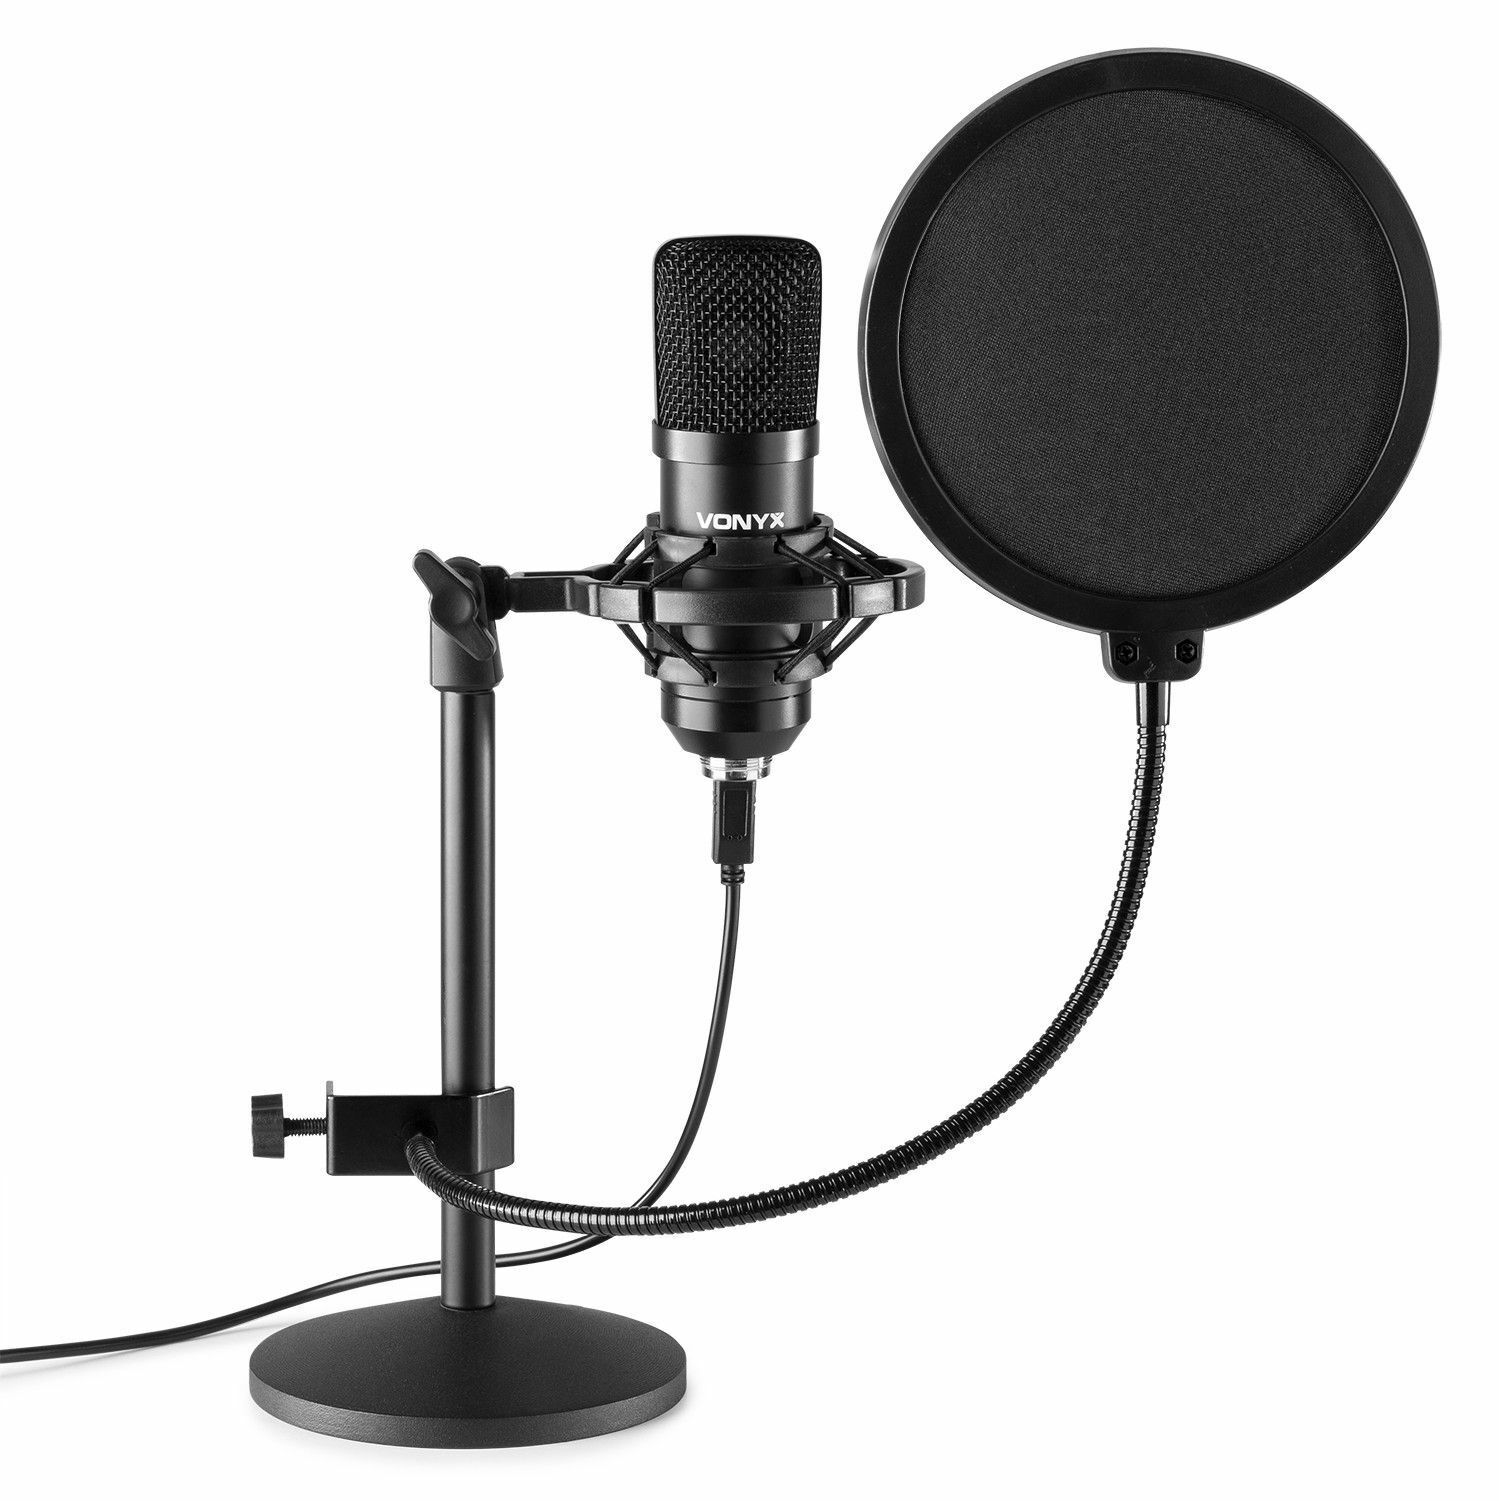 Vonyx CMTS300 USB Studio microfoon met tafelstandaard - Zwart